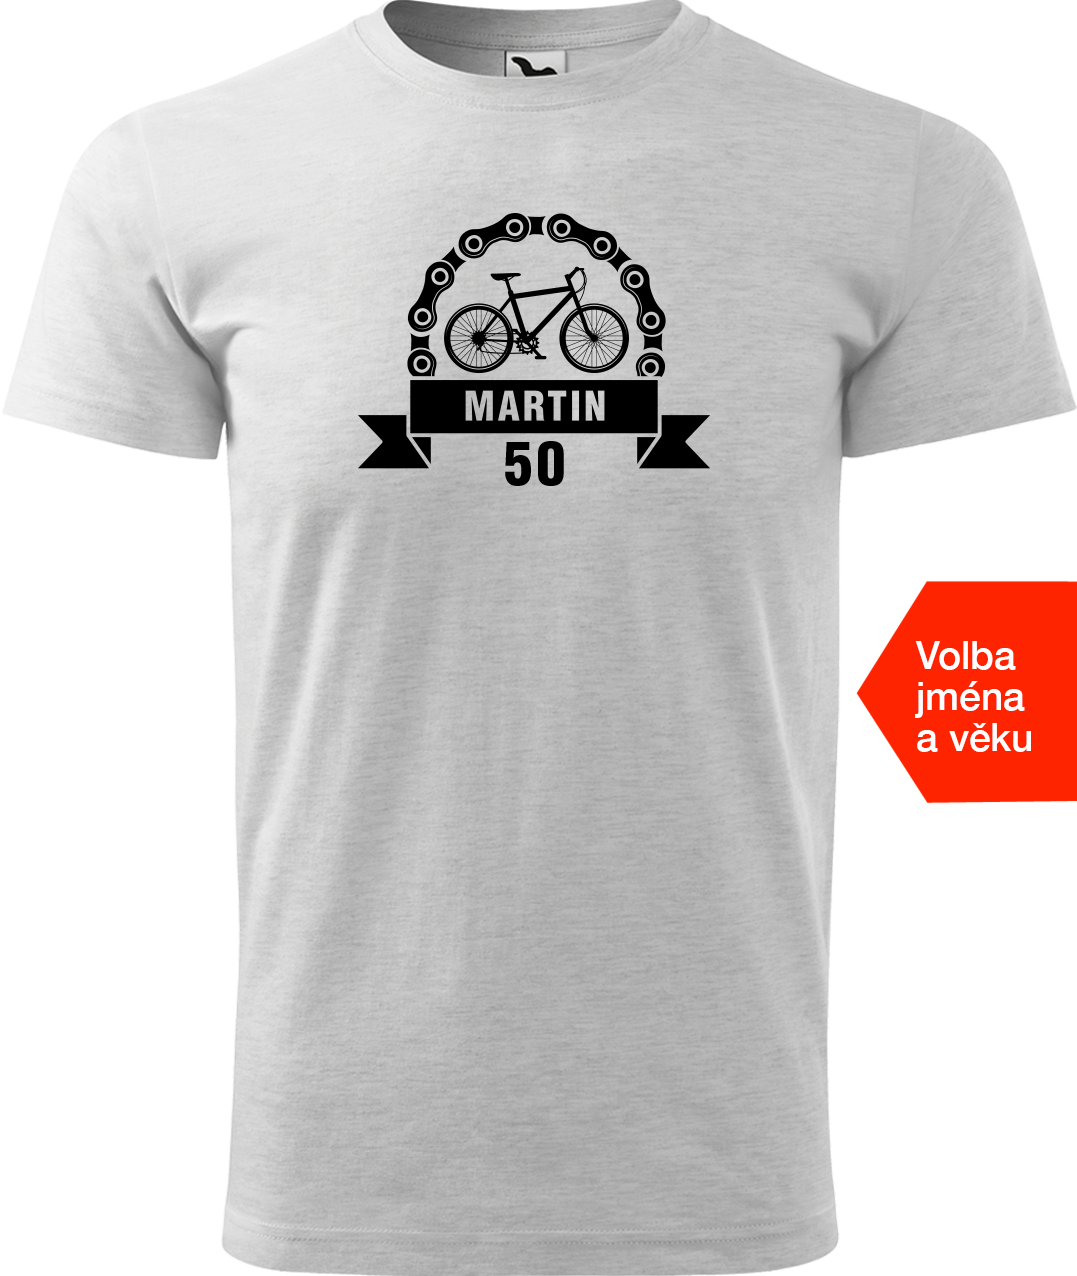 Pánské tričko pro cyklistu se jménem a věkem - Blahopřání Velikost: XL, Barva: Světle šedý melír (03)